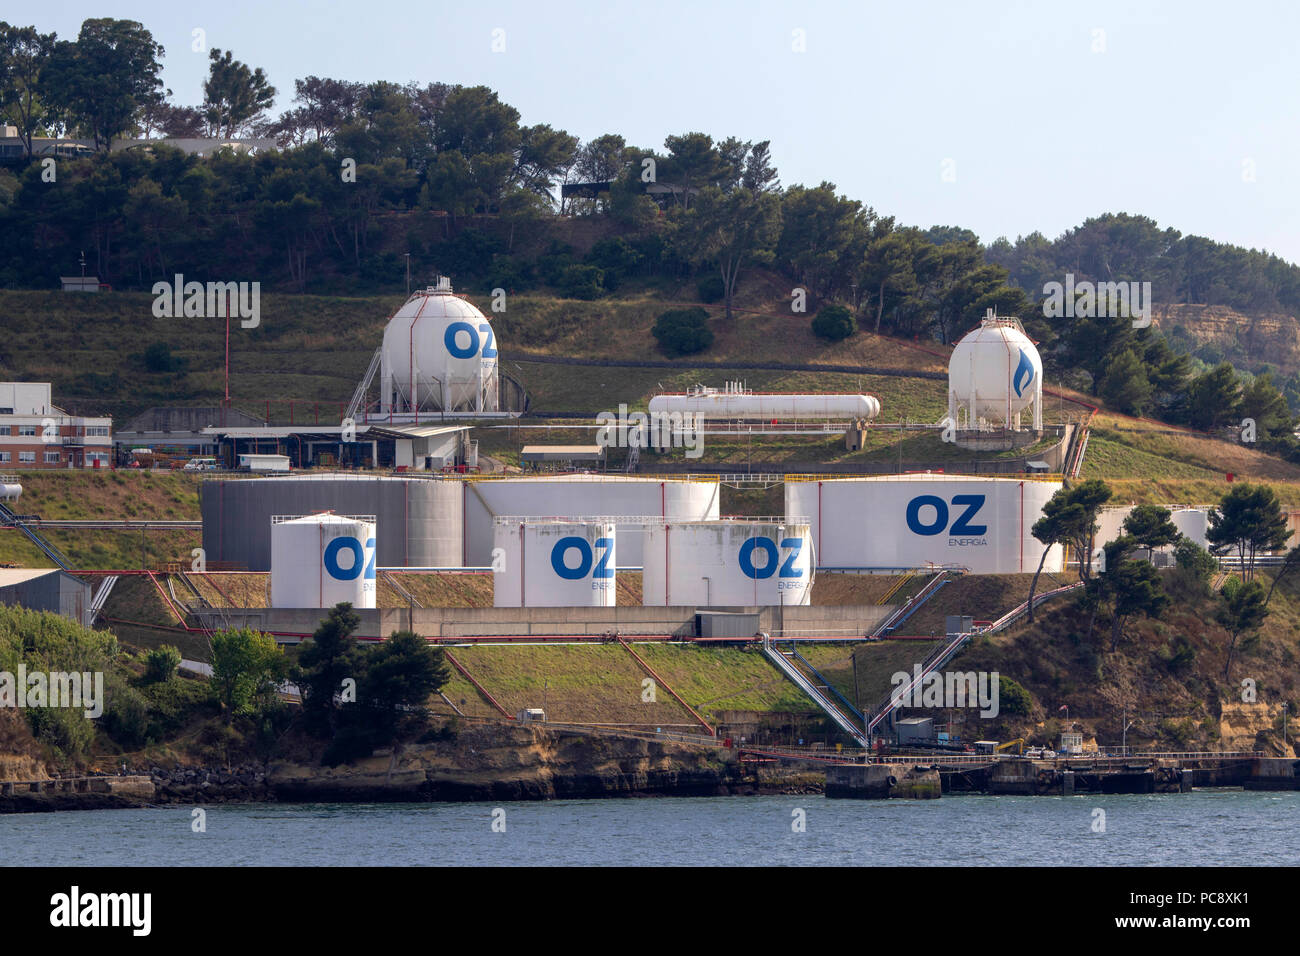 OZ Energia Trafaria terminale per l'importazione e lo stoccaggio del GPL, di carburante e di lubrificante per lo stoccaggio di carburante sul fiume Tago a Lisbona, Portogallo Foto Stock